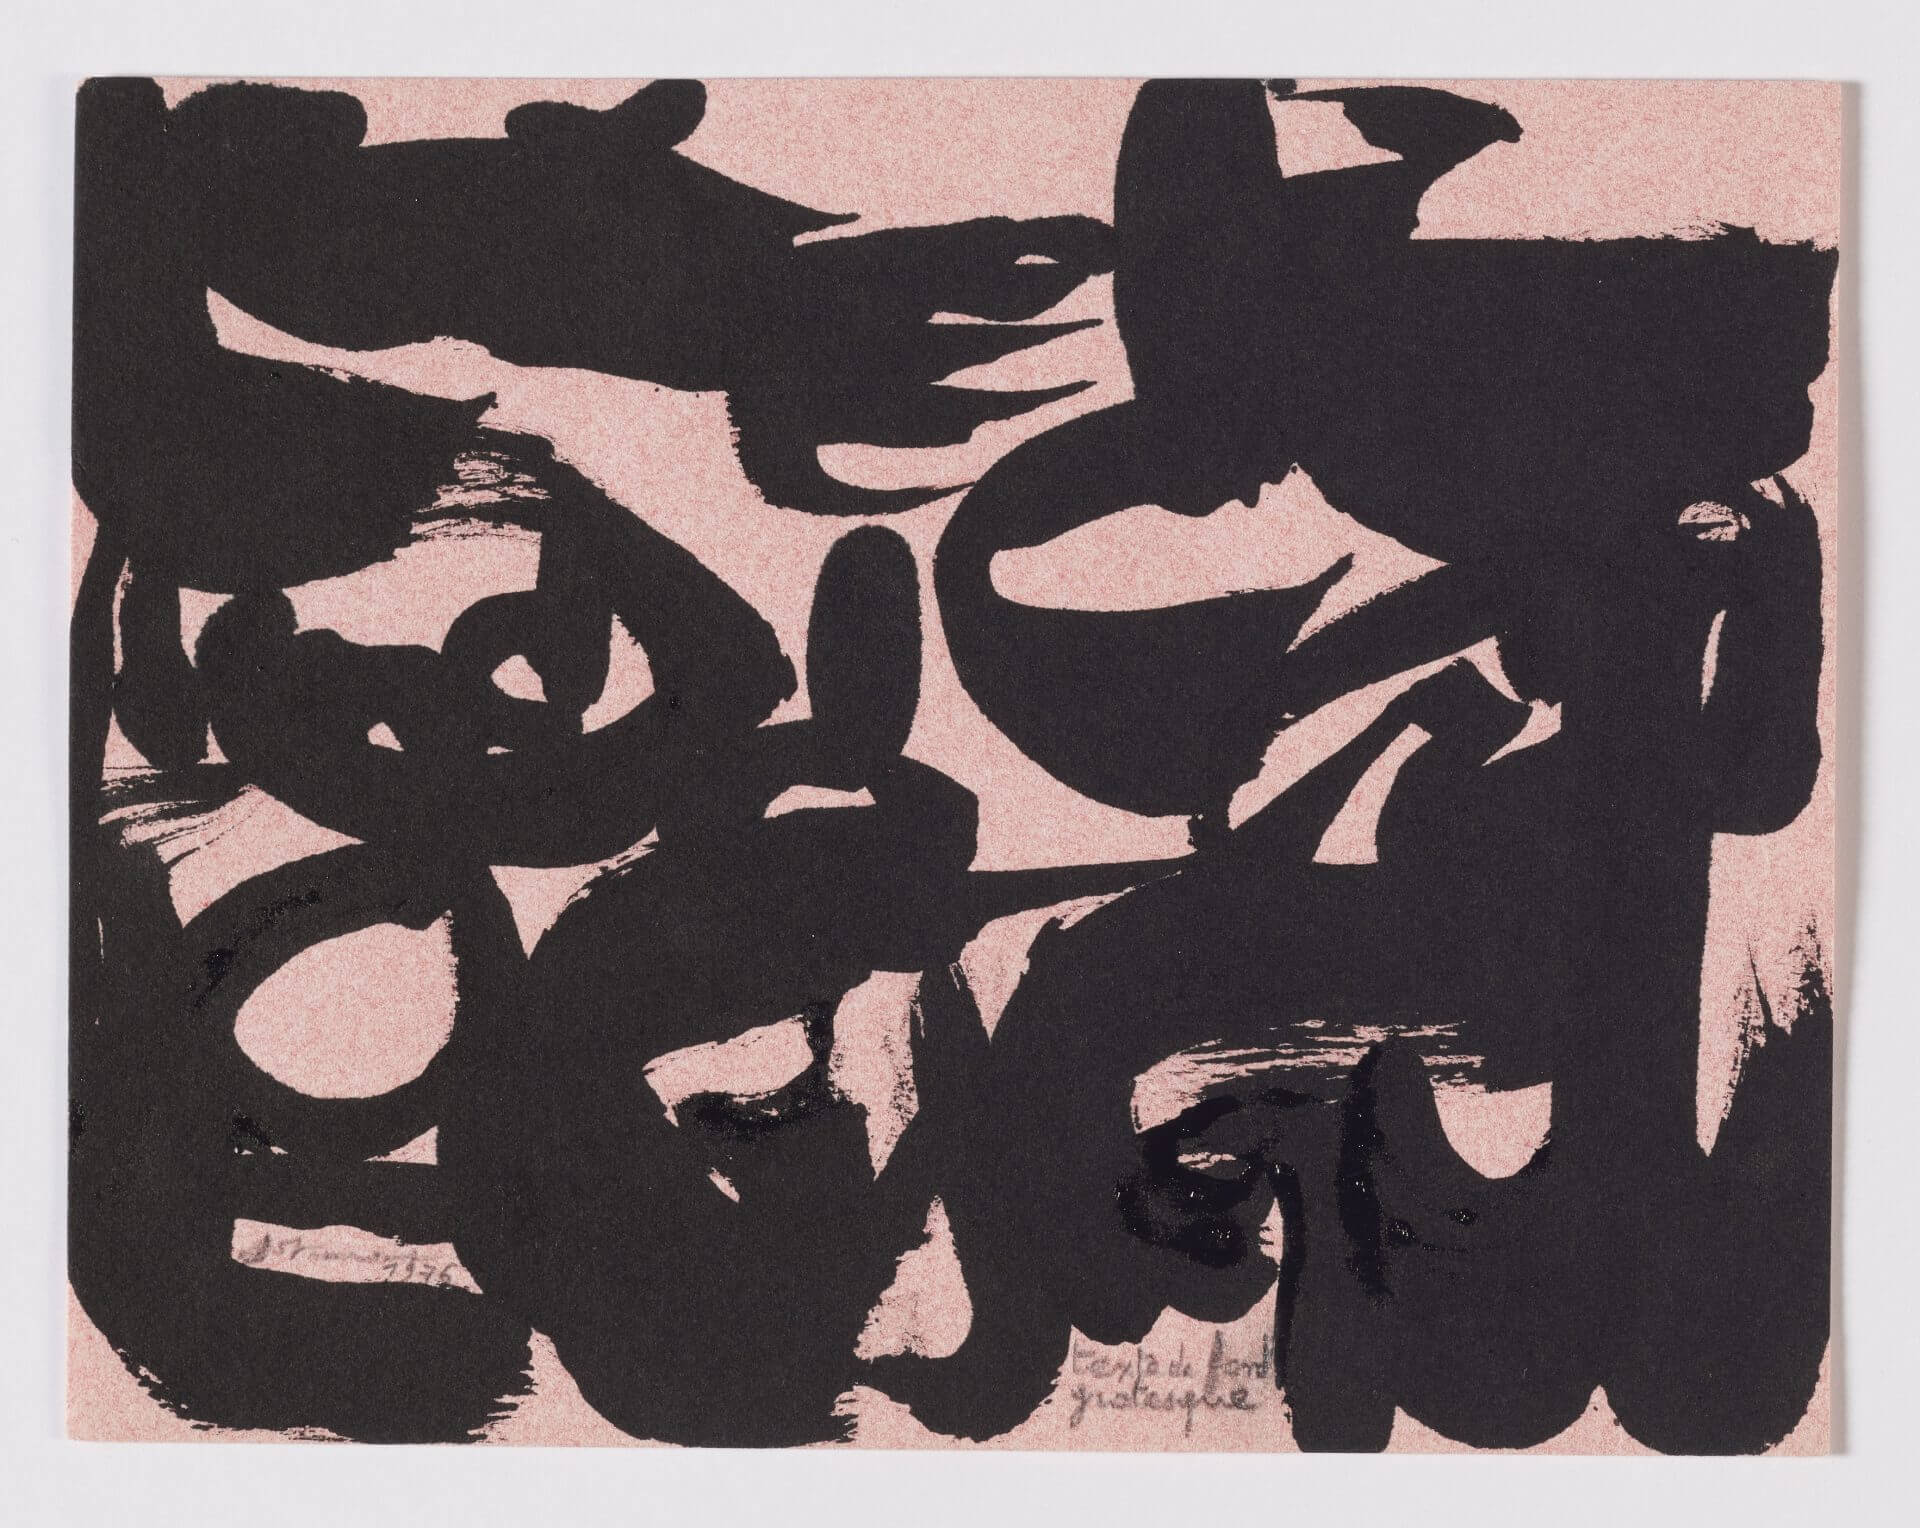 Christian Dotremont T exte de fond grotesque Encre d e Chine sur papier buvard rose 14,6 x 18,9 cm 1976